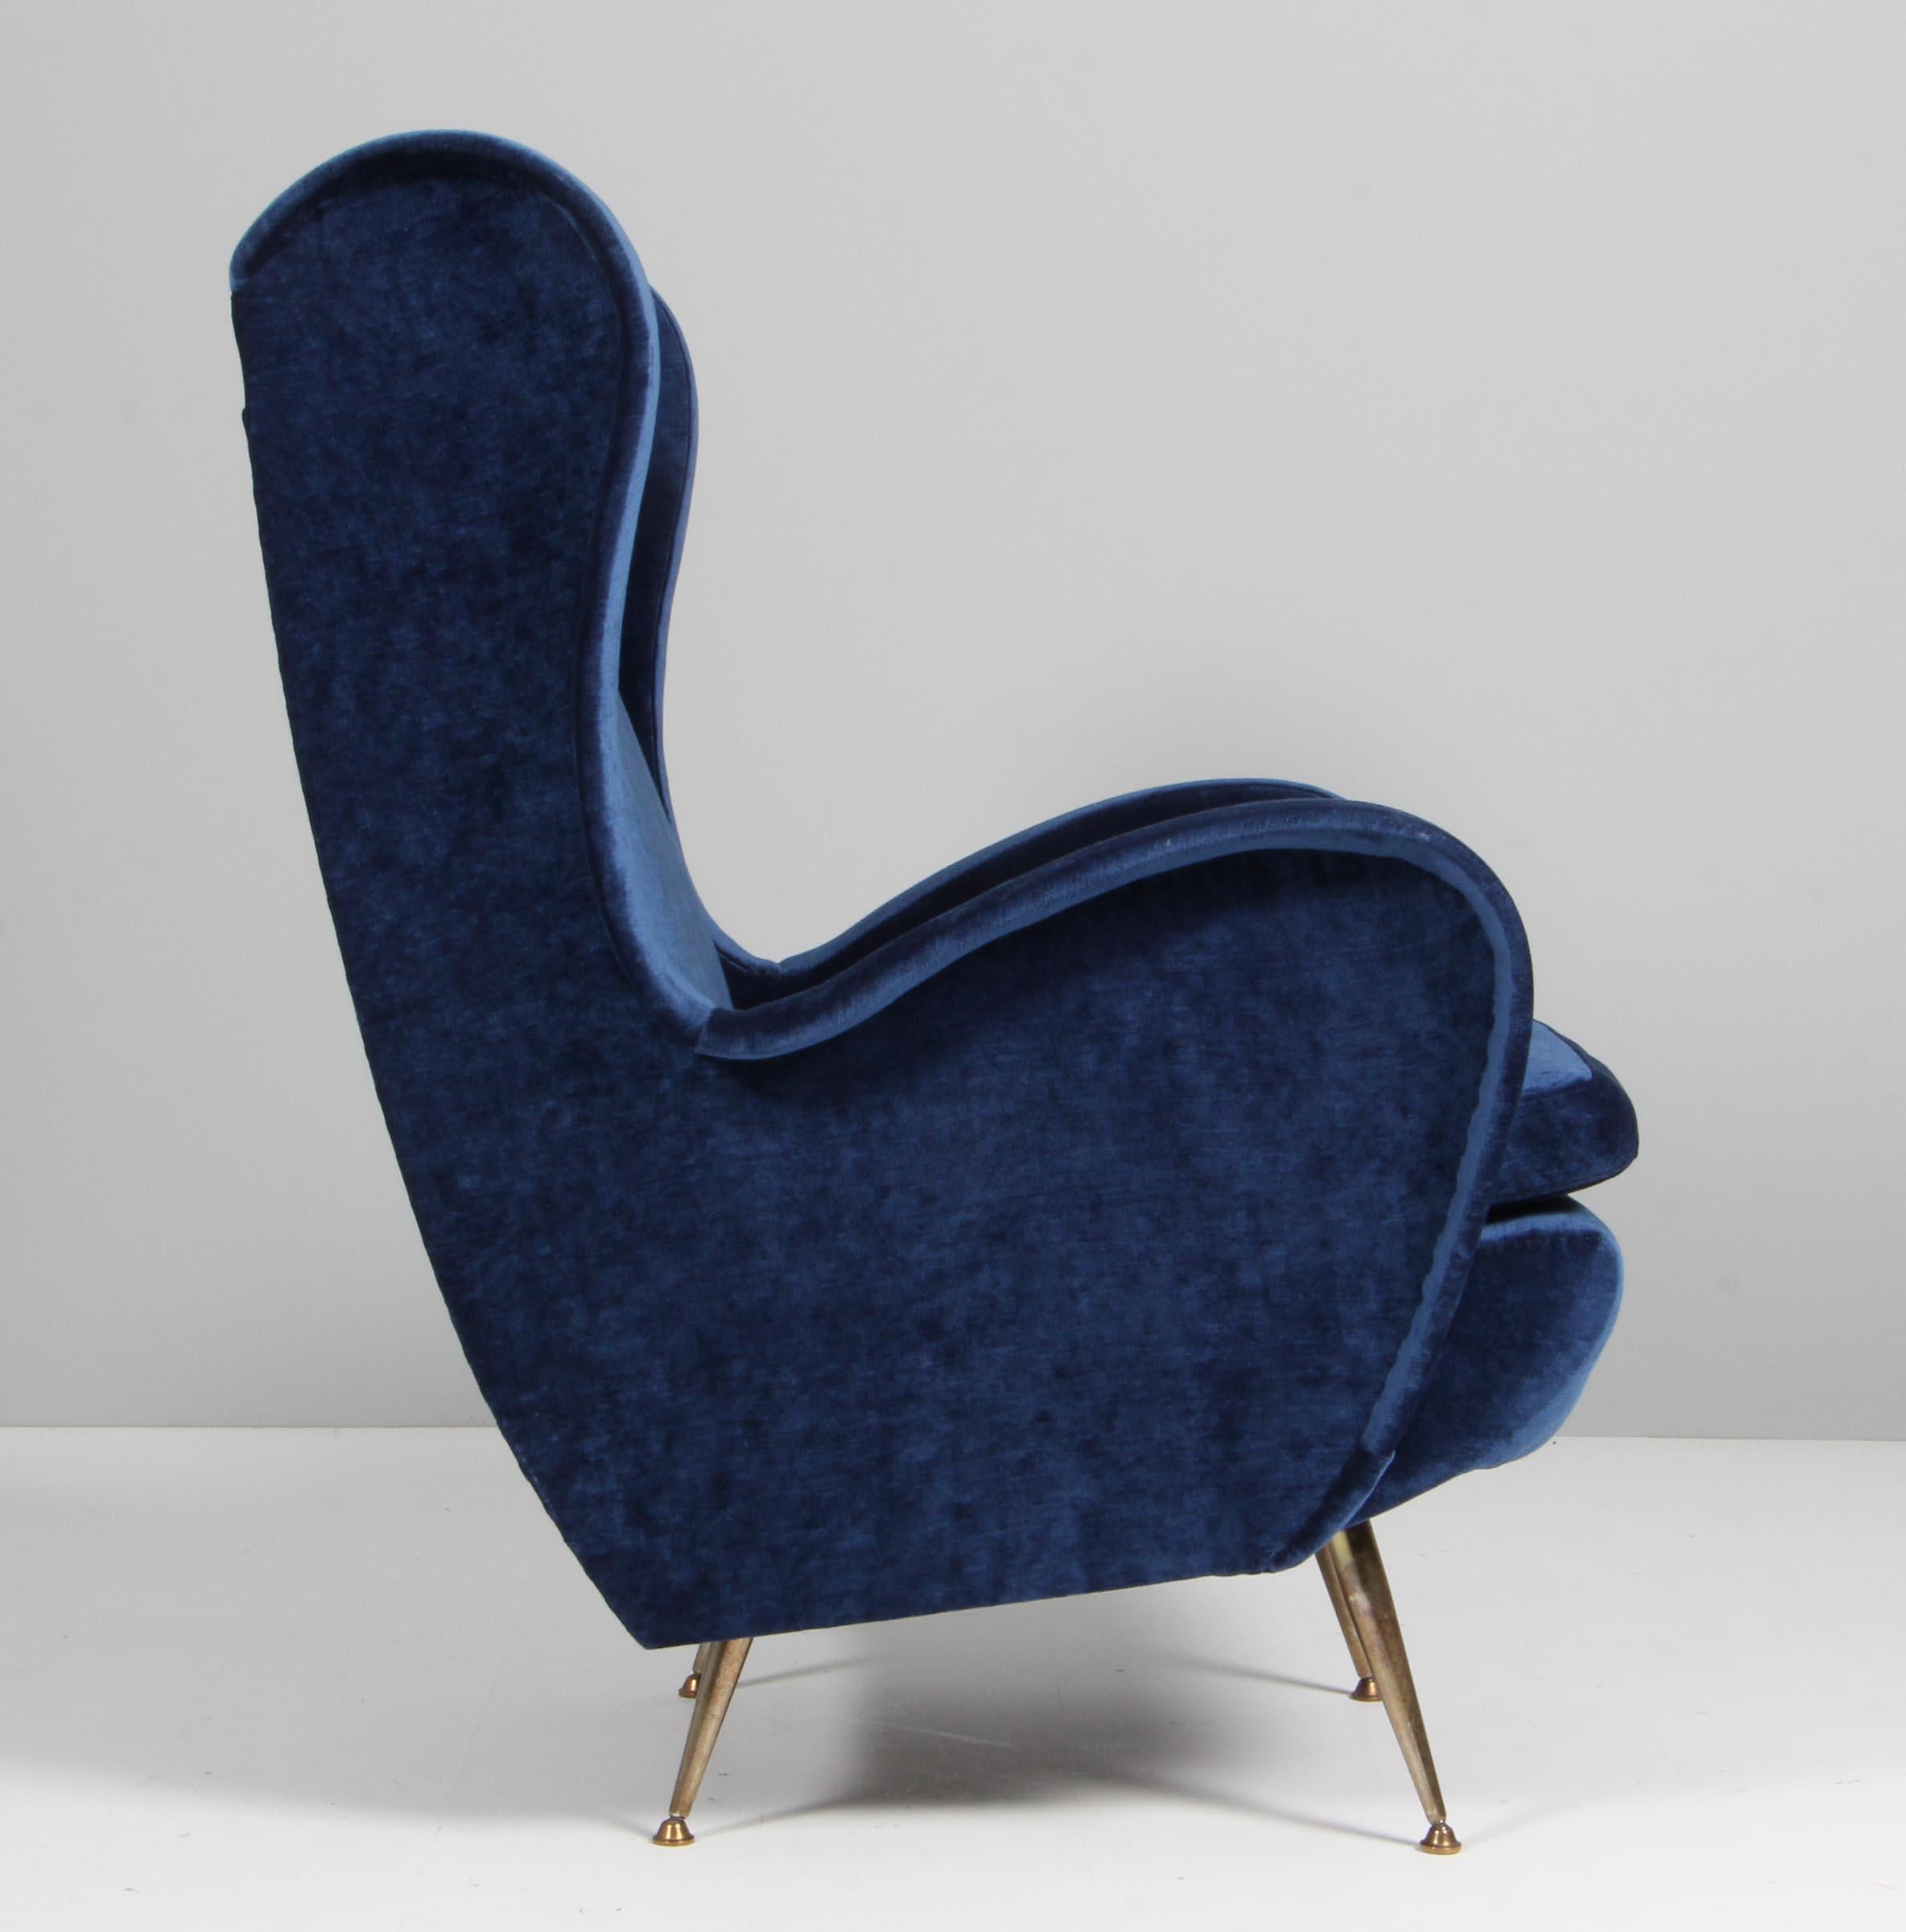 Sessel, entworfen von Gigi Radice für Minotti. Hergestellt aus Massivholz mit blauem Samtbezug und polierten Messingbeinen. Original-Polsterung.
